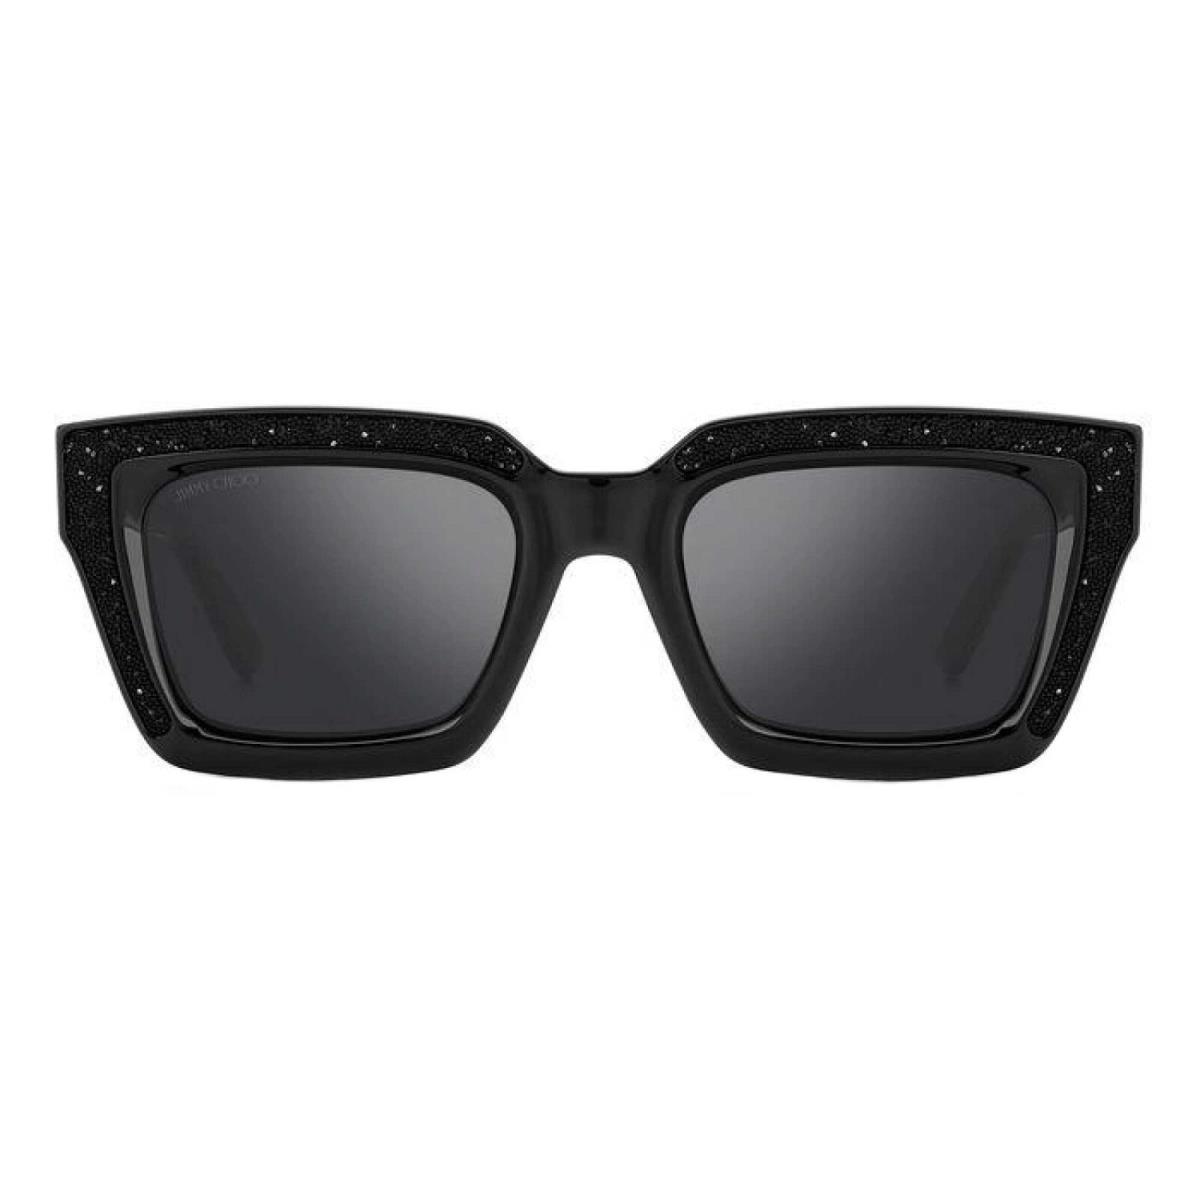 Jimmy Choo Women`s Sunglasses Black Frame Silver Mirror Lenses Megs/s 0807 T4